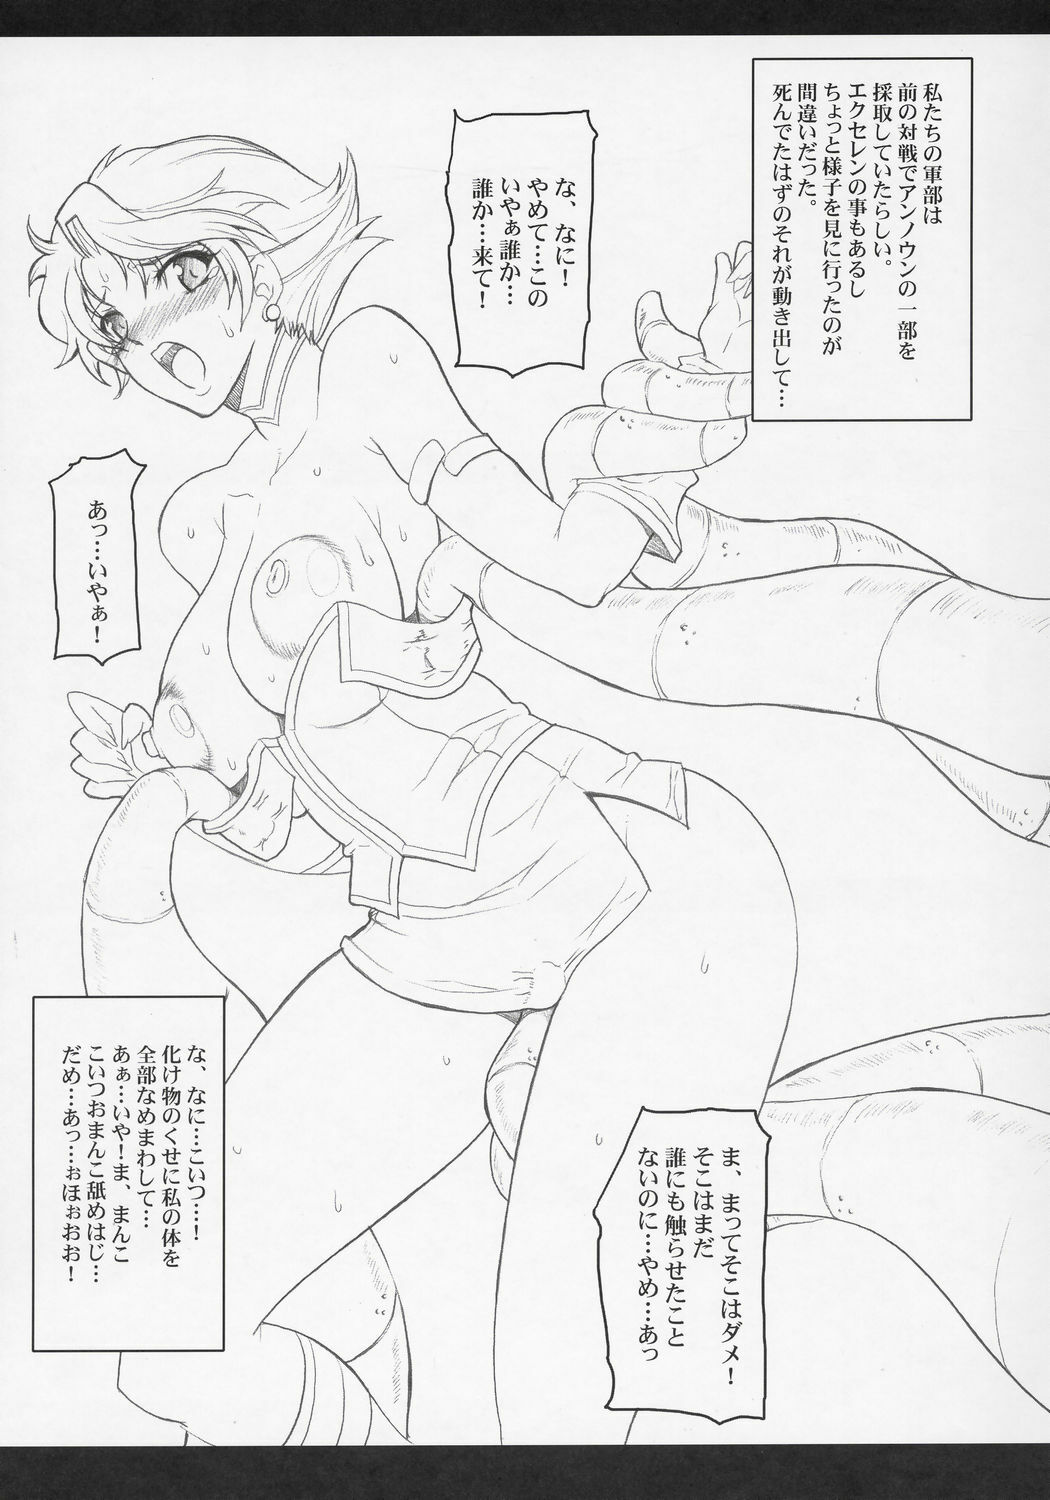 (SC31) [Youkai Tamanokoshi (CHIRO)] STEEL HEROINES Vol. 1 -Kusuha- (Super Robot Wars) page 26 full